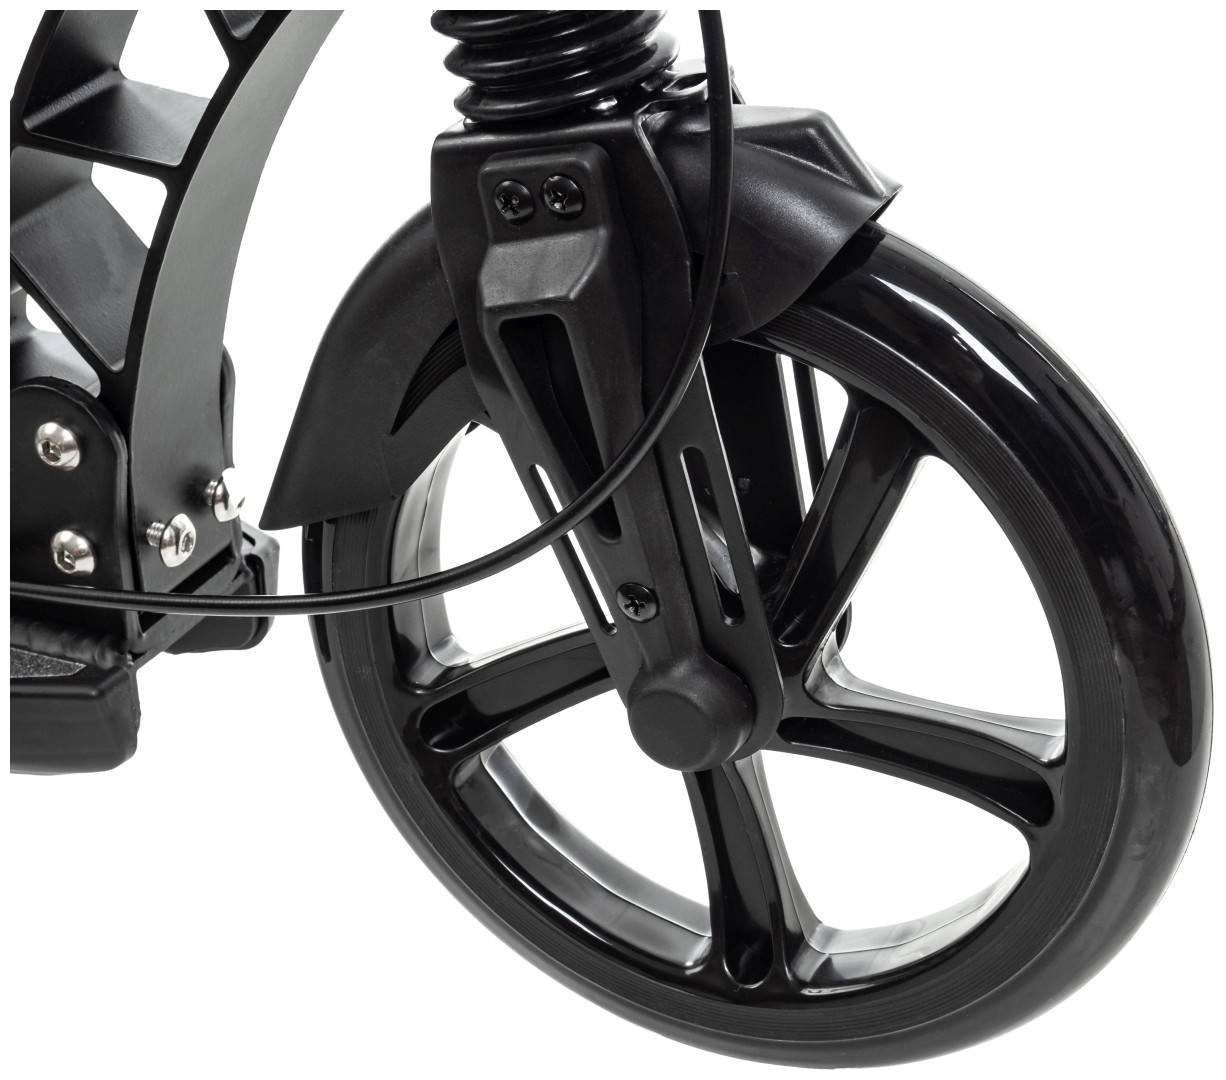 HyperMotion Scooter Erwachsene Roller für schwarz - REGAMO